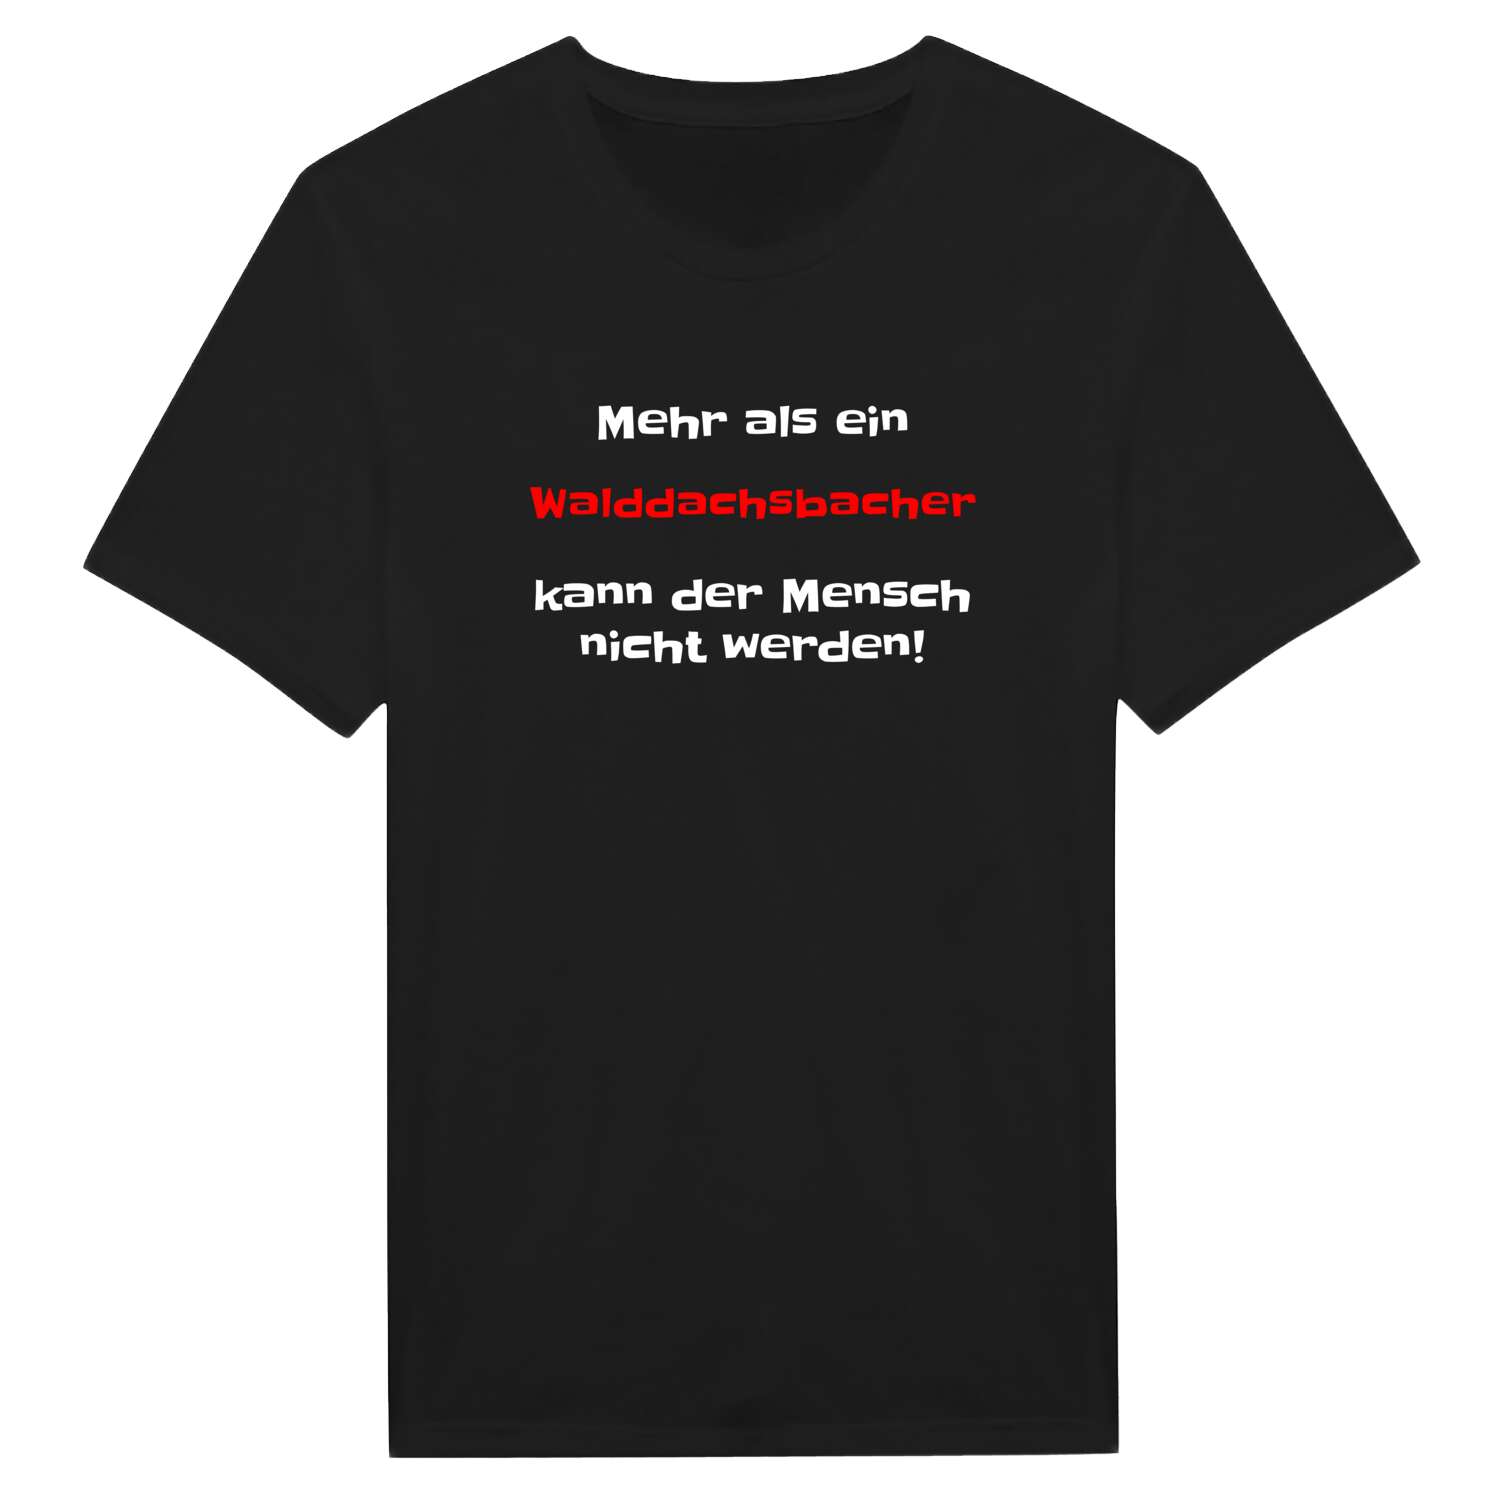 Walddachsbach T-Shirt »Mehr als ein«